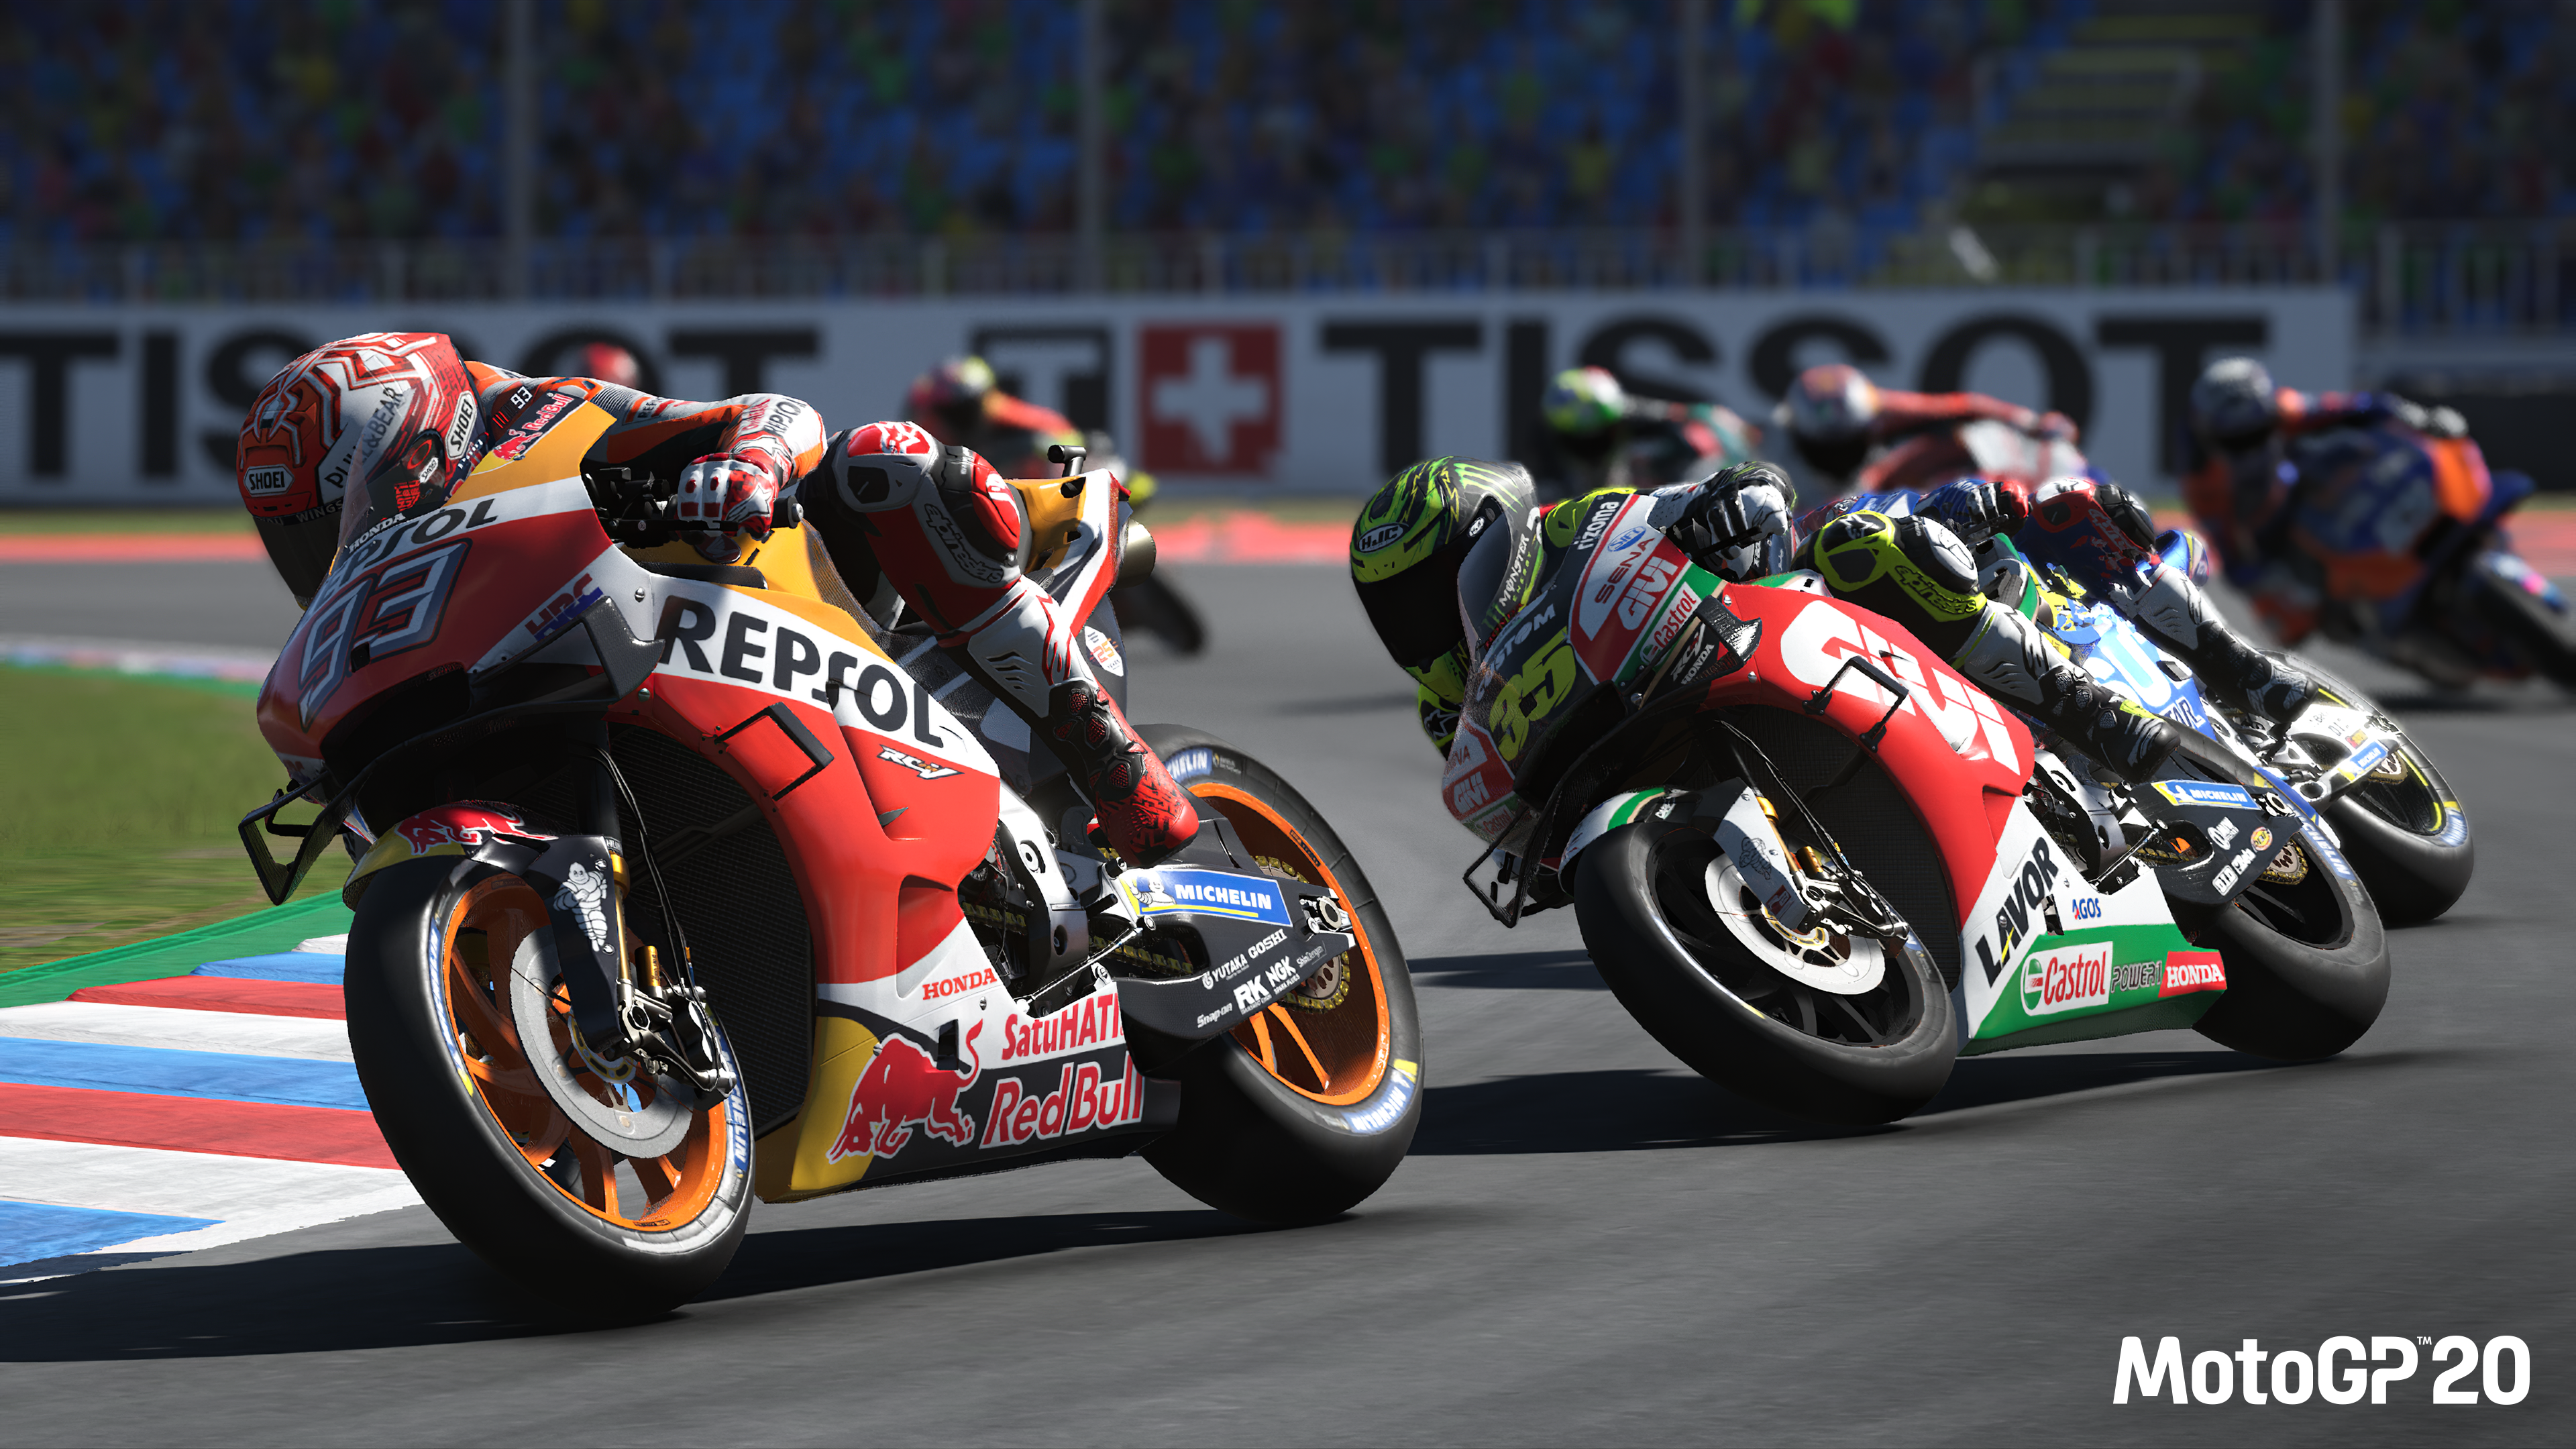 MotoGP20 – Erstes Gameplay-Video veröffentlicht